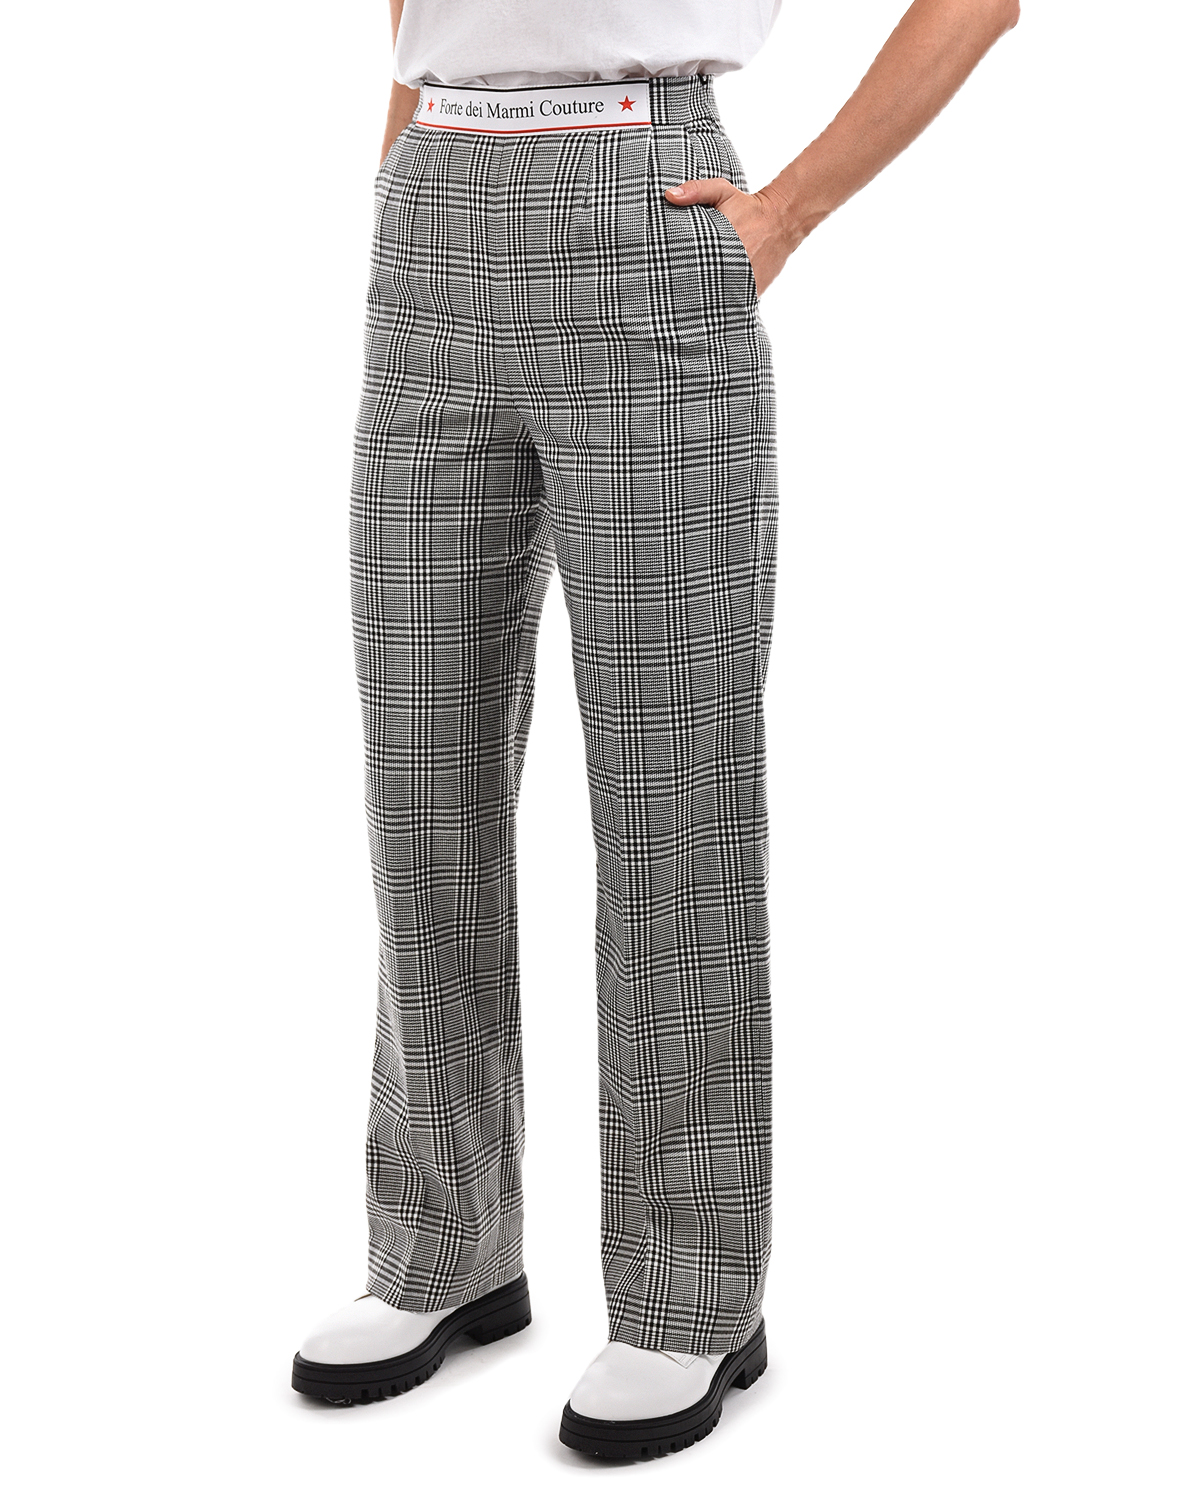 Прямые брюки в клетку Forte dei Marmi Couture, размер 42, цвет серый - фото 7